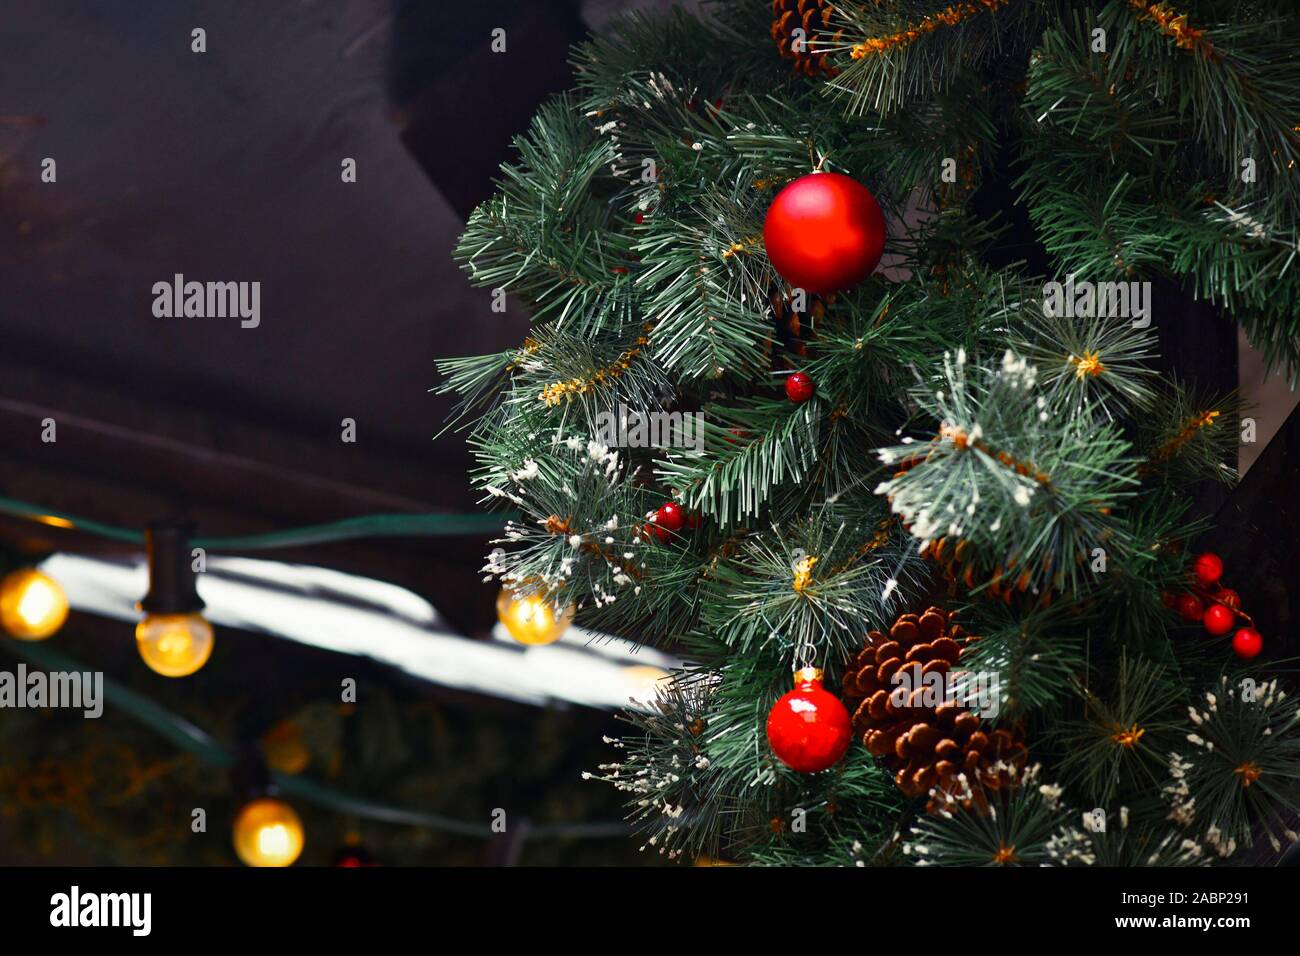 Weihnachtsbaum mit künstlichem Schnee mit Tannenzapfen und Red tree ornament Flitter und Lichterkette im Hintergrund bei traditionellen Weihnachten dekoriert Stockfoto